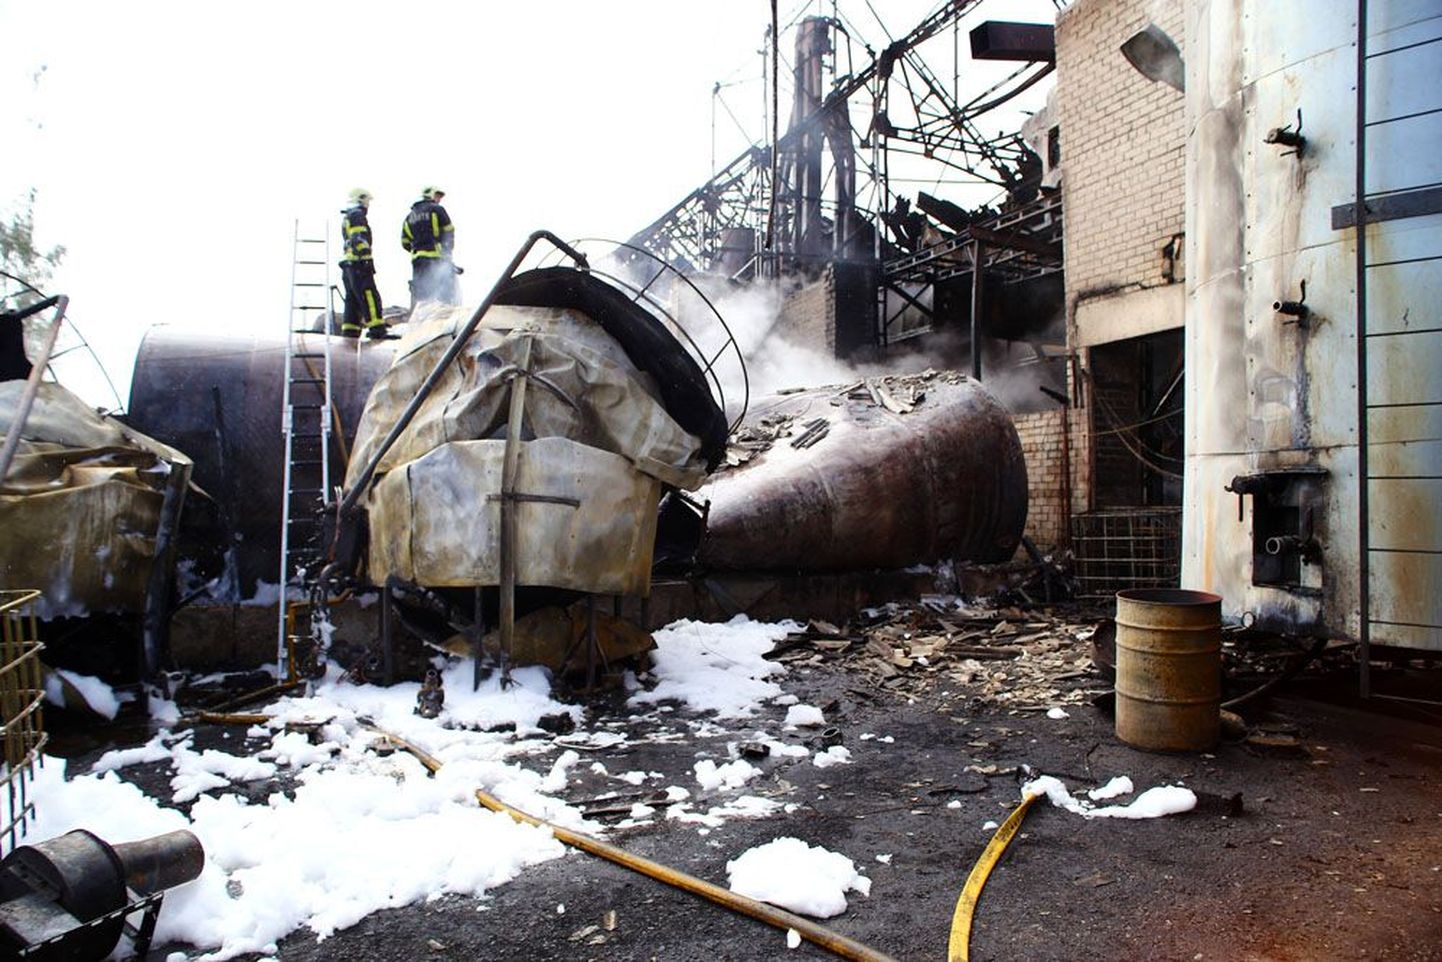 Antsla söödatehases süttisid õlimahutid. 
Tänavu 1. septembril oli põleng Antsla tehases, kus valmistati toiduõli jääkidest loomasööta. Häirekeskus sai kell 11.04 teate, et Antslas Tööstuse tänaval asuva tehase platsil on tulekahju. Päästjad selgitasid välja, et ümberpumpamise käigus oli tekkinud leke ning süttinud umbes 10 tonni maha voolanud õli. Tulekahjus kuumenesid õlimahutid ning paar mahutit lõhkes plahvatusega. Tuli levis läheduses olevasse tööstushoonesse ning õlimahutitele. Lõplikult piirati tule levik umbes poolteist tundi pärast päästetööde algust vahuga. Inimesed õnnetuses viga ei saanud.